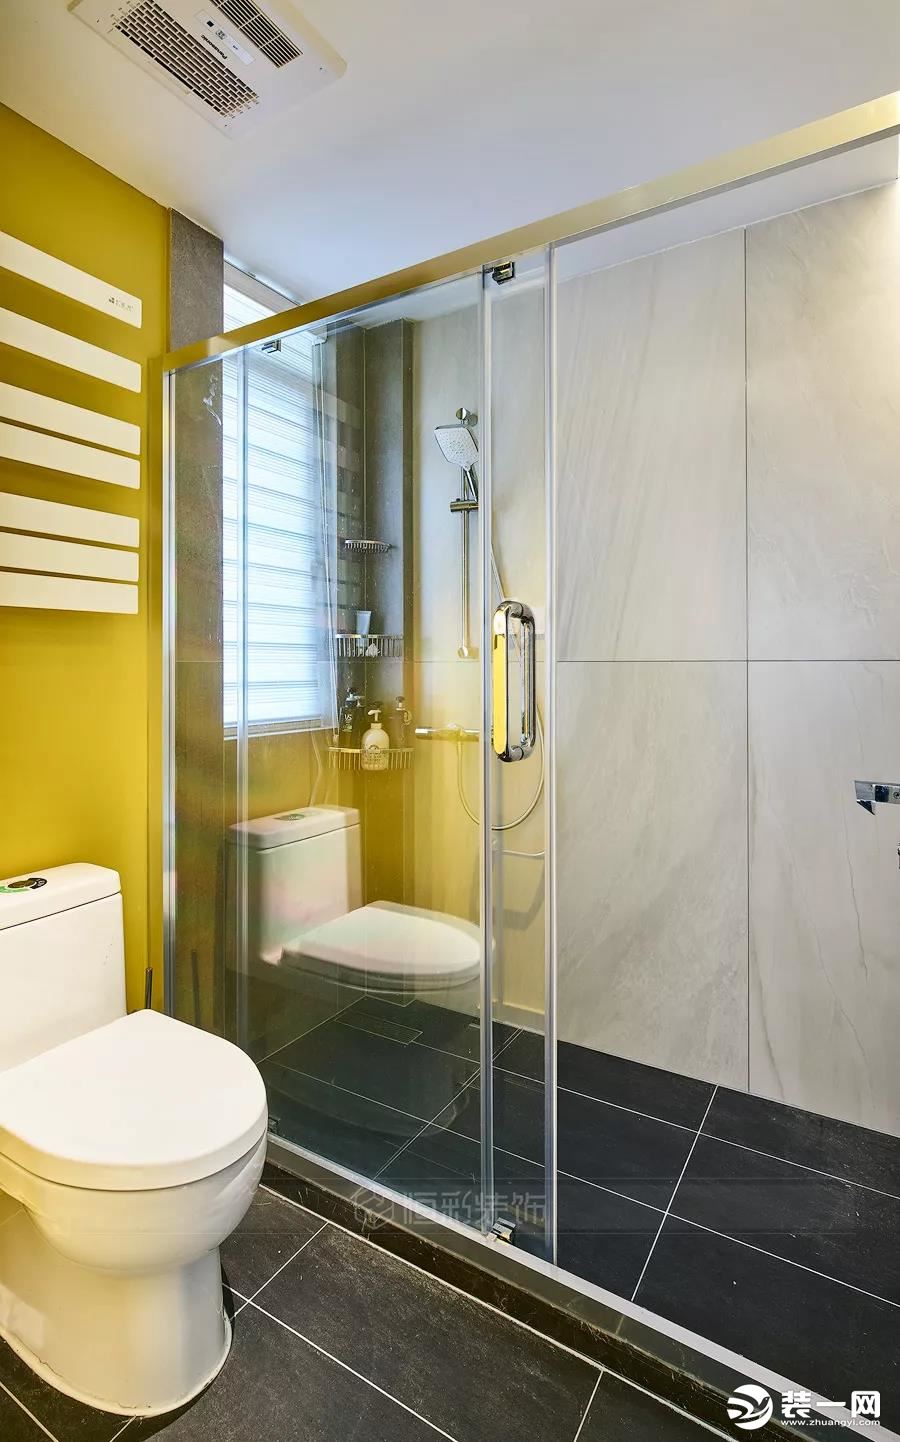 卫生间姜黄色墙面搭配灰色地砖，非常调皮个性的搭配，彰显了业主朋友对生活的独到追求。